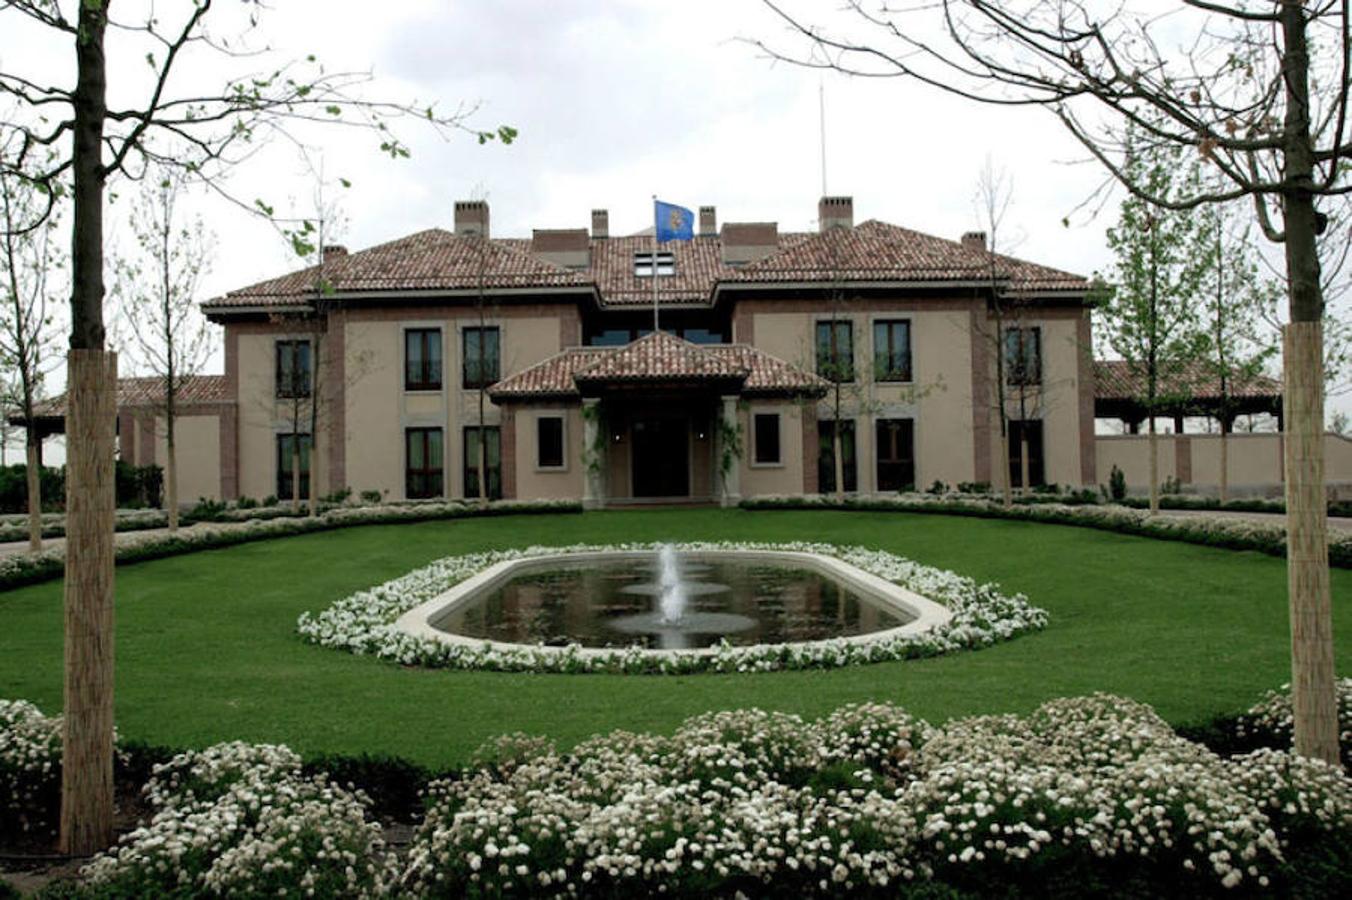 En 2002, don Felipe pasa a vivir en el Pabellón del Príncipe, una casa-palacio dentro del complejo del Palacio de la Zarzuela.